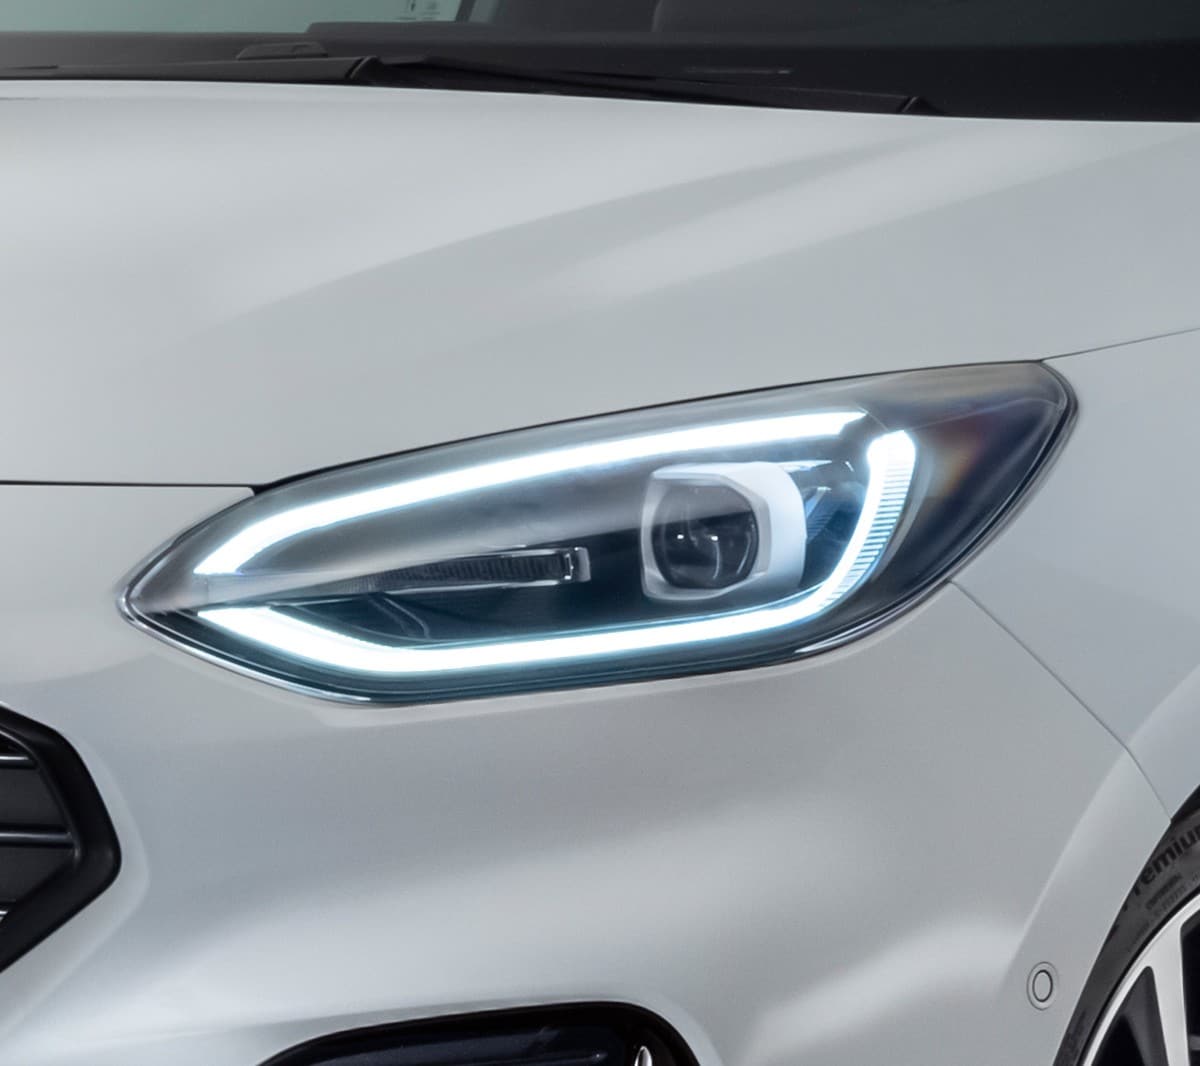 Ford Fiesta in Weiß. Nahansicht der Front mit Fokus auf den LED-Scheinwerfer.